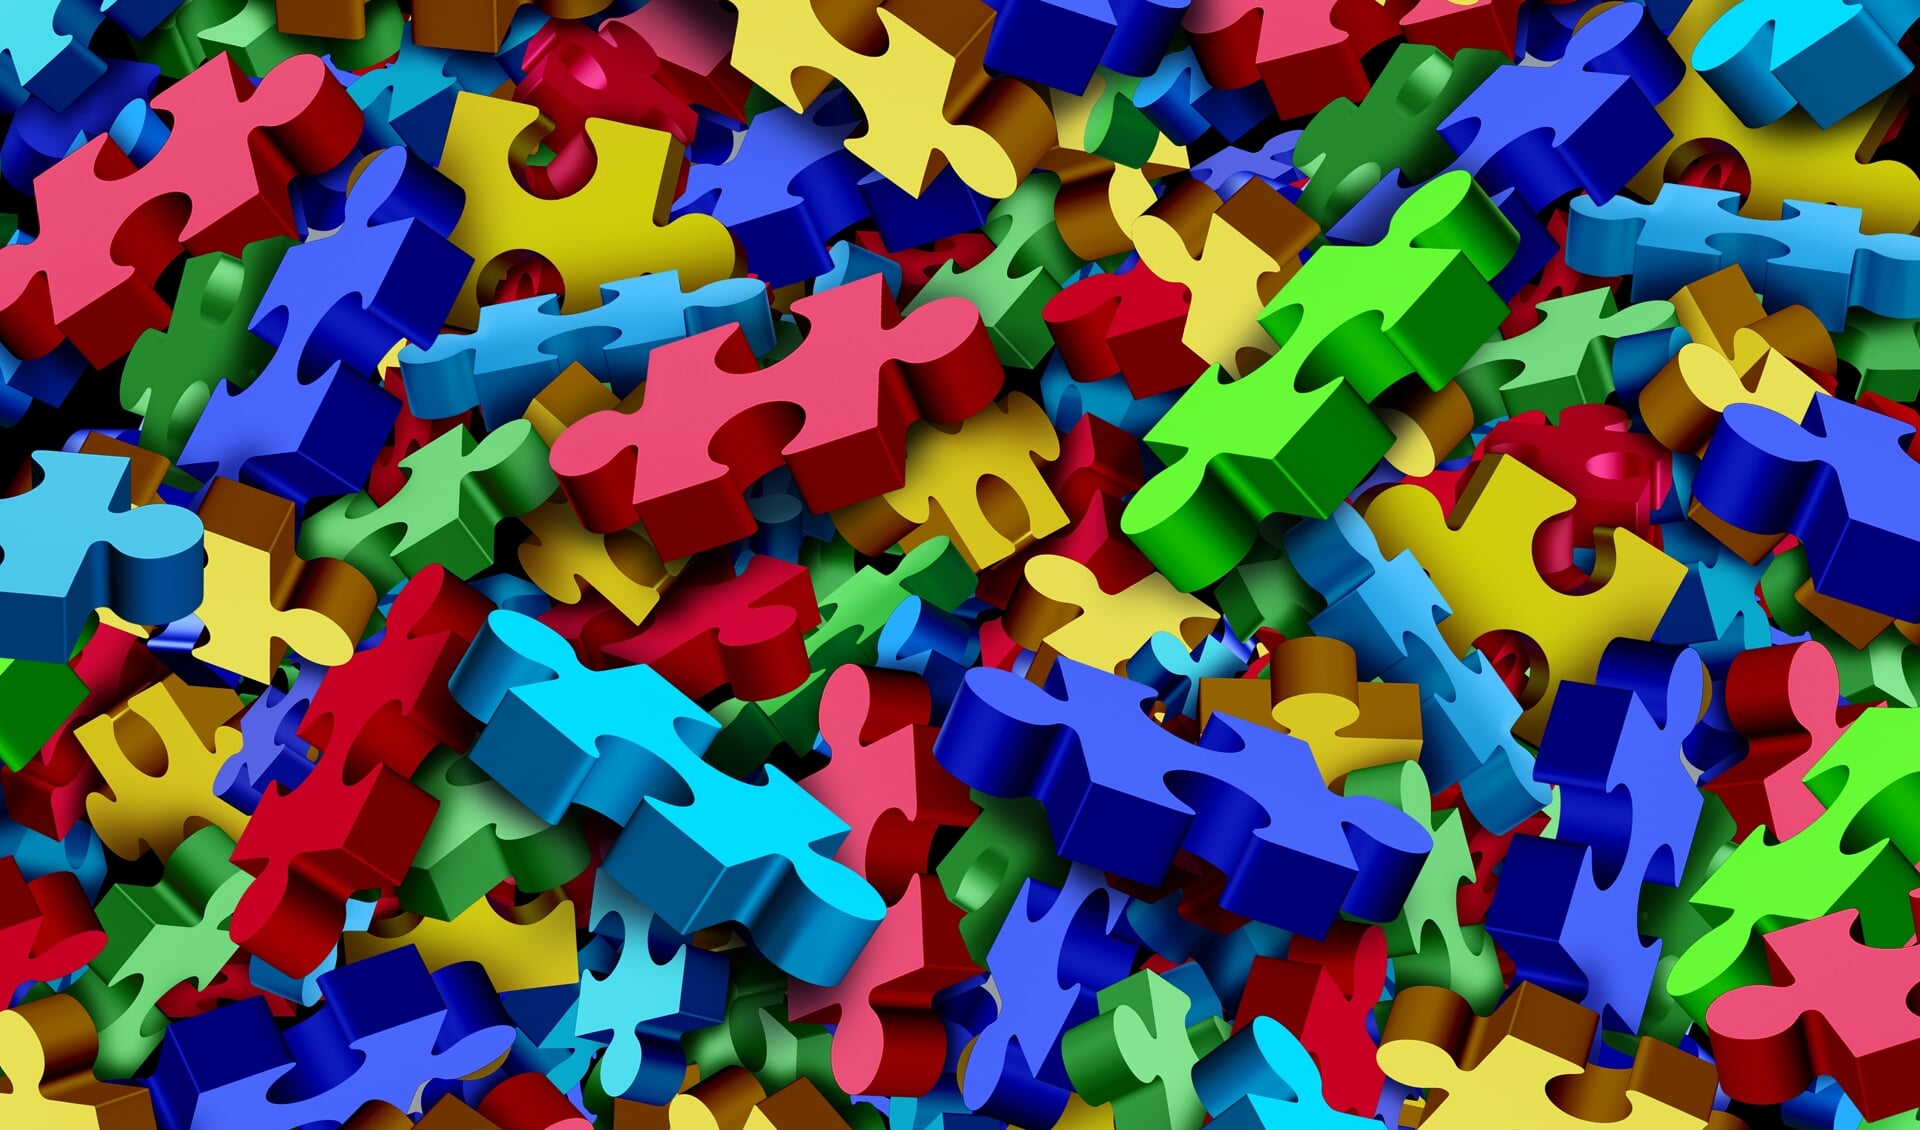 Autisme is een heel breed spectrum dat voor iedereen net even anders is. De inloopmomenten helpen om de puzzelstukjes op de juiste plek te leggen.